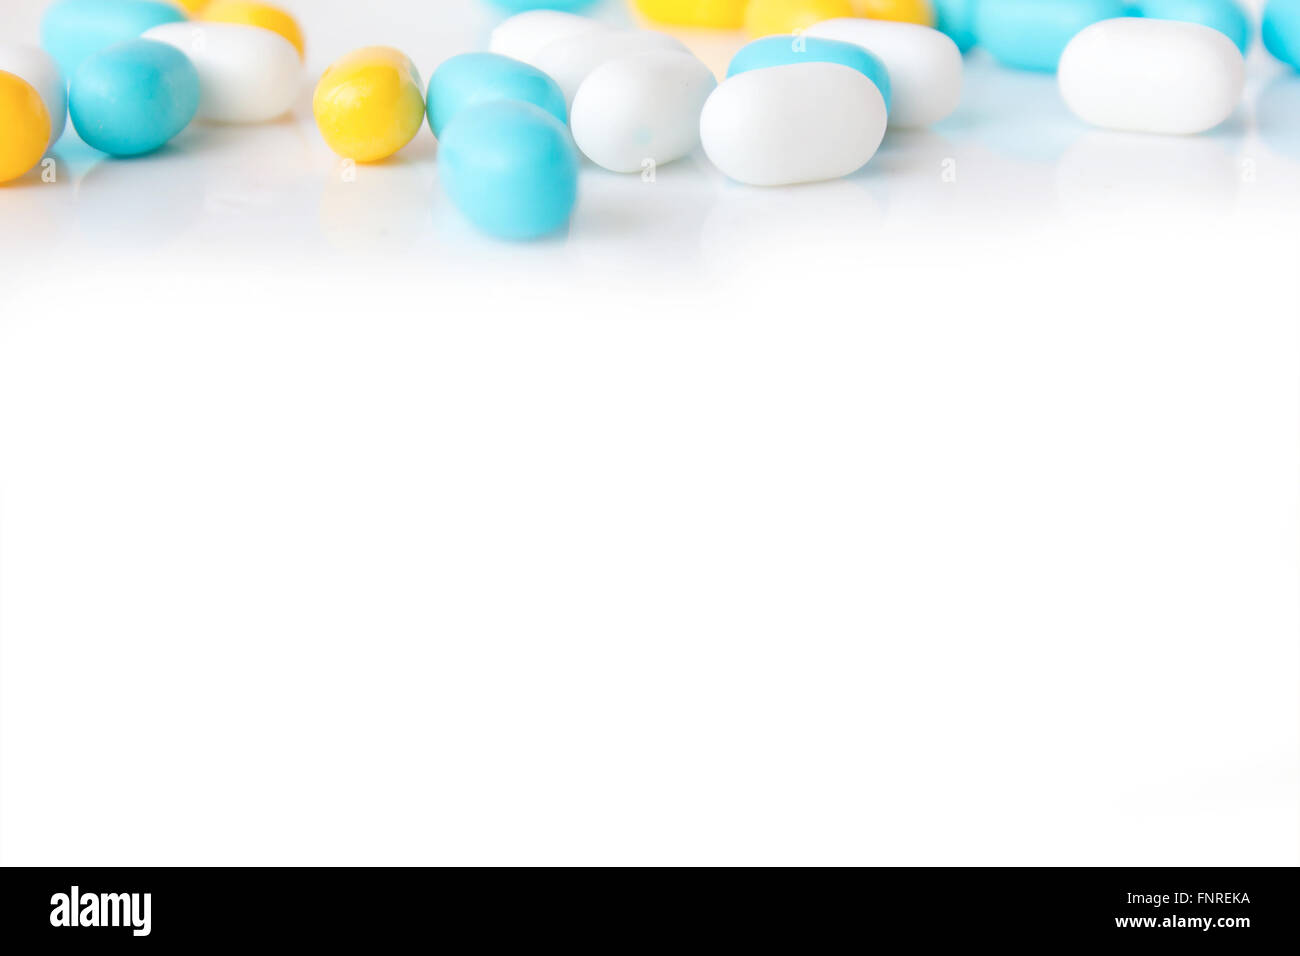 Blauen, gelben und weißen Pillen auf weißem Hintergrund Stockfoto